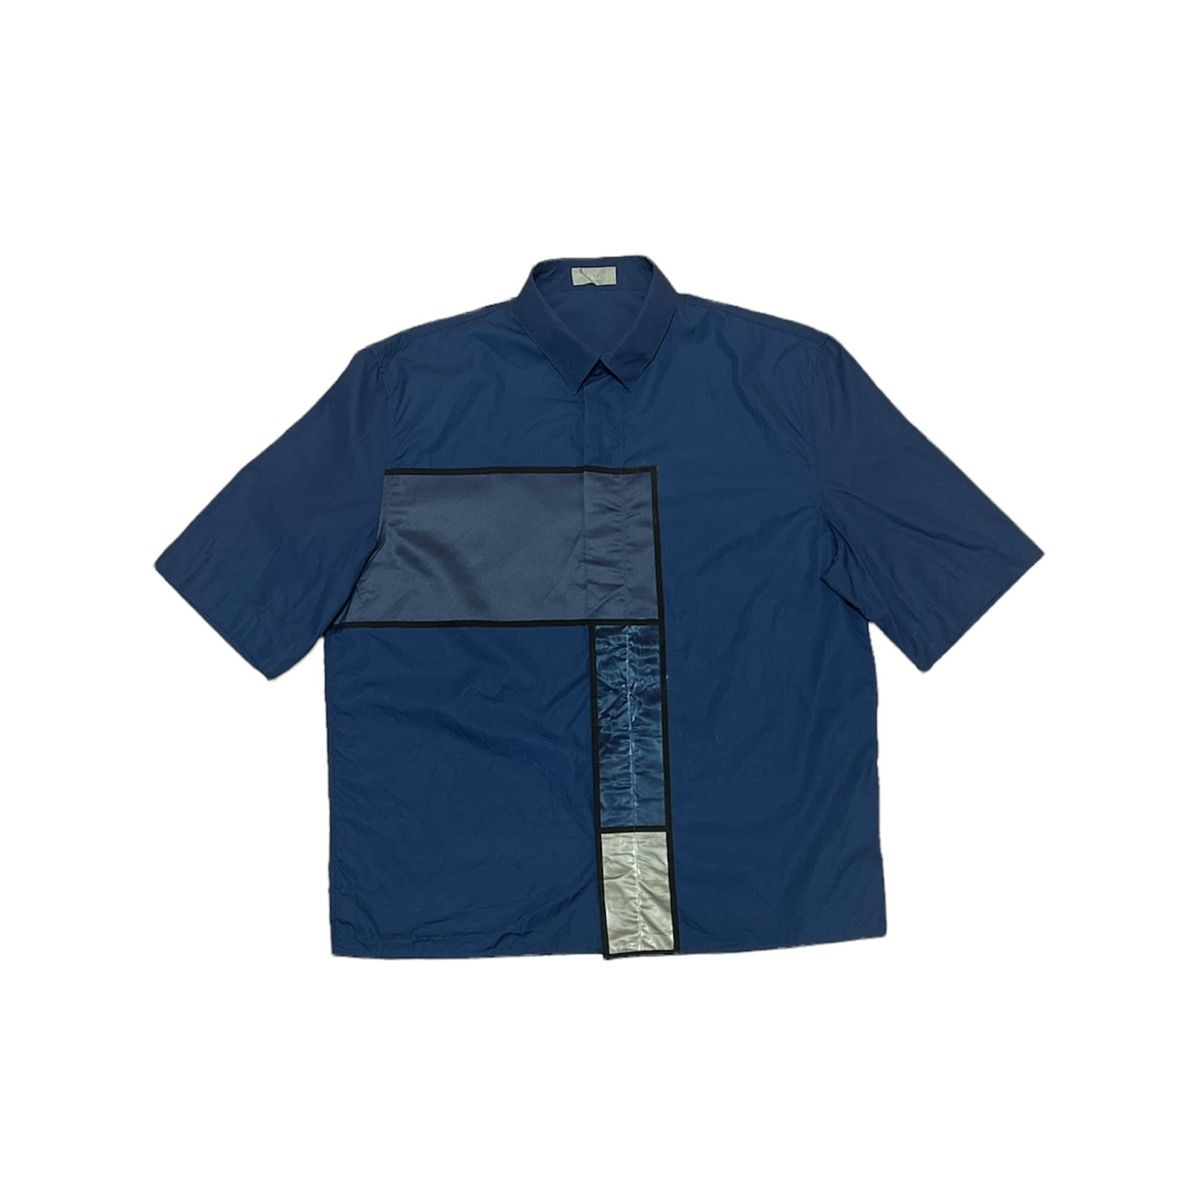 SS14 Dior Homme Kris Van Assche Haute Patchwork Shirt - 4